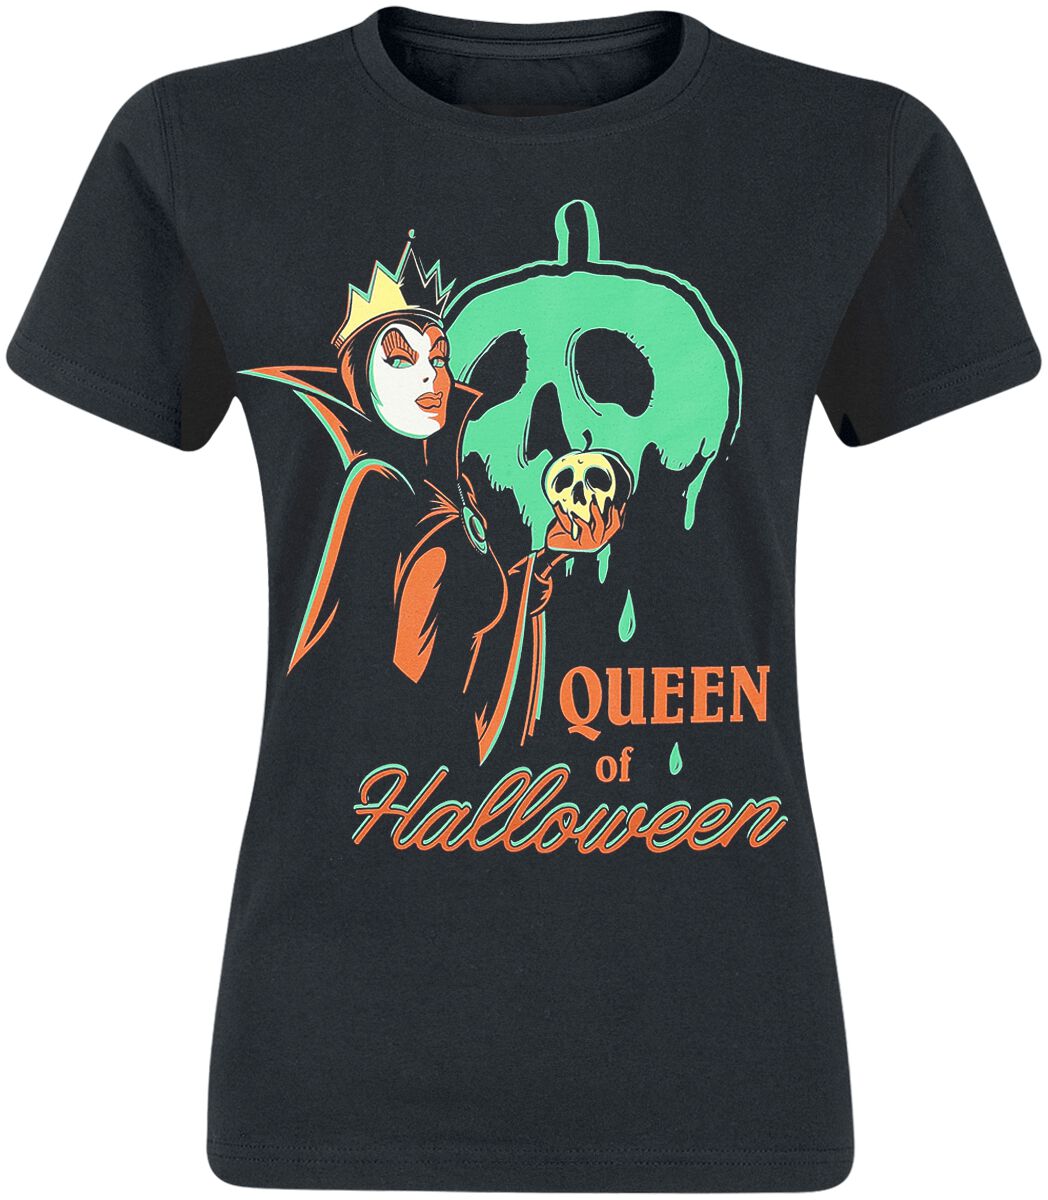 Schneewittchen - Disney T-Shirt - Disney Villains - Queen of Halloween - M - für Damen - Größe M - schwarz  - Lizenzierter Fanartikel